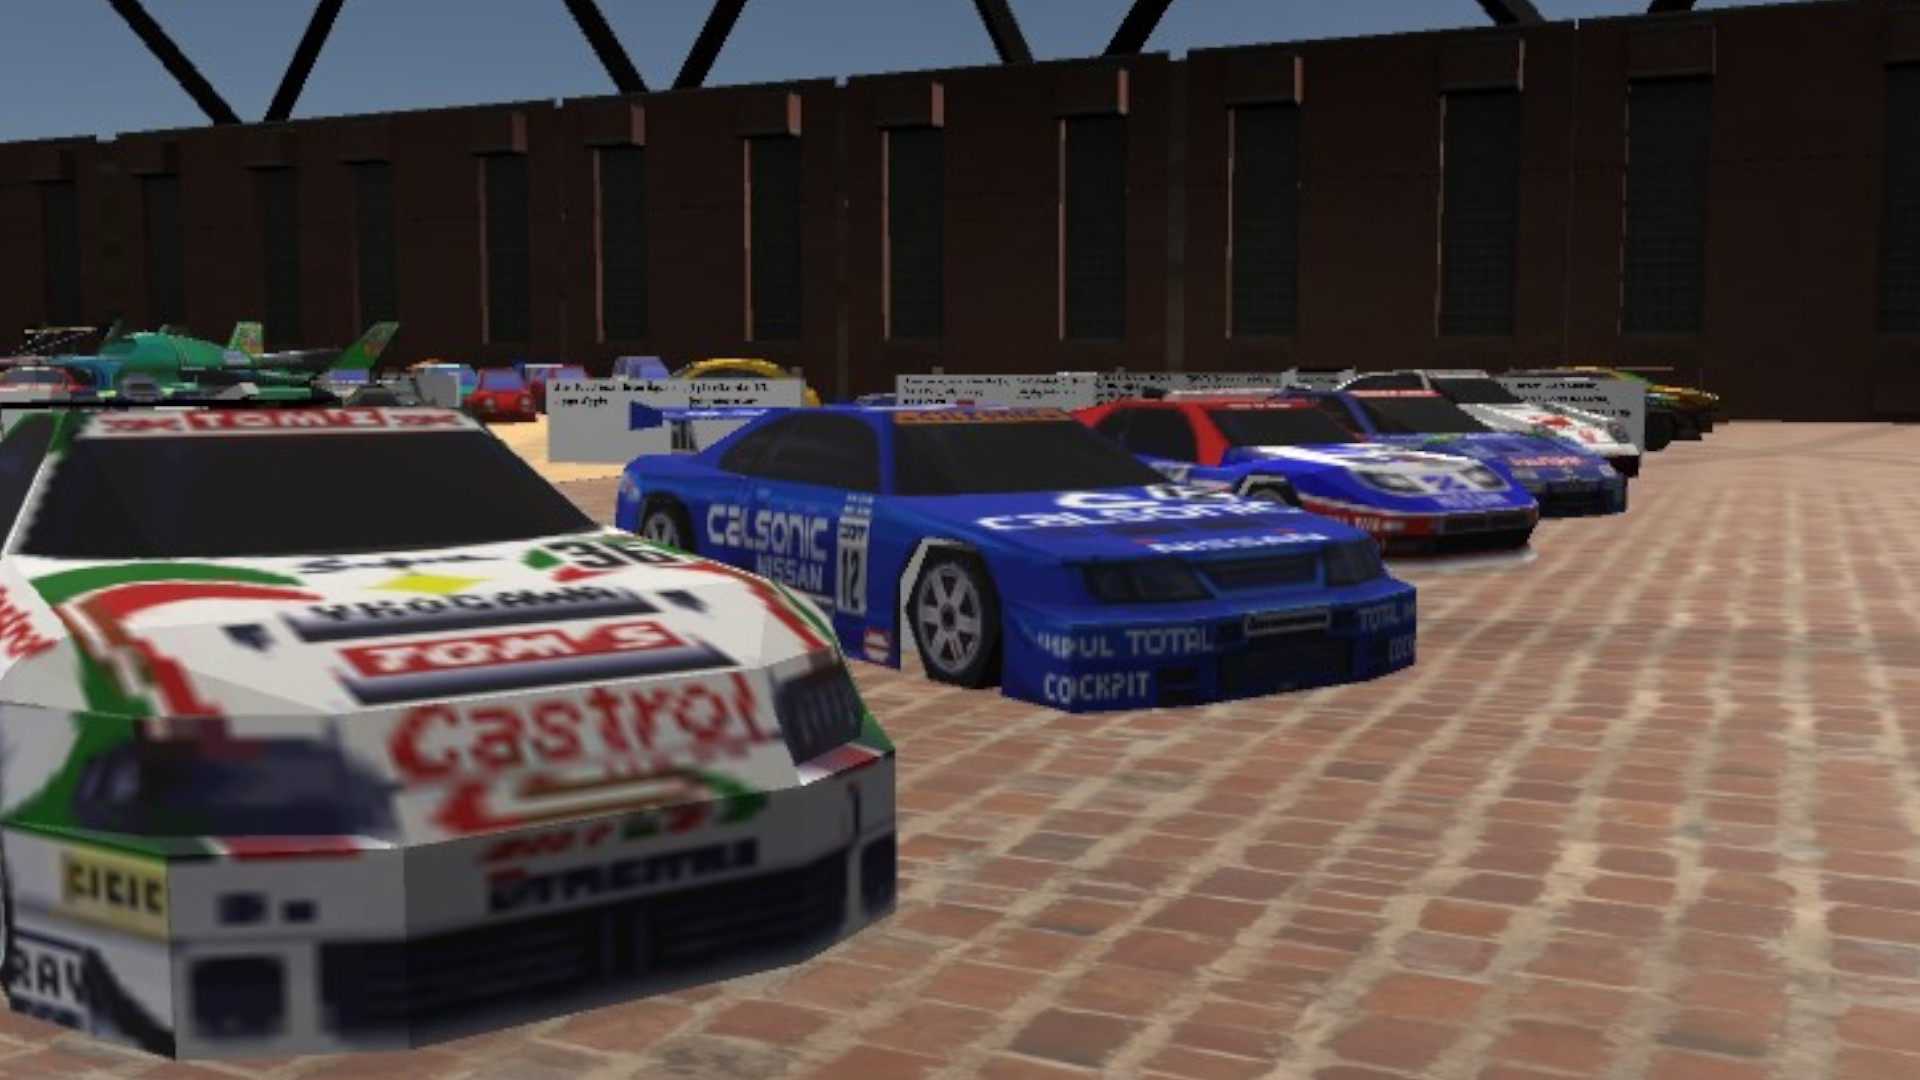 متحف السيارات 64 هو متحف افتراضي للسيارات من ألعاب نينتندو 64 7